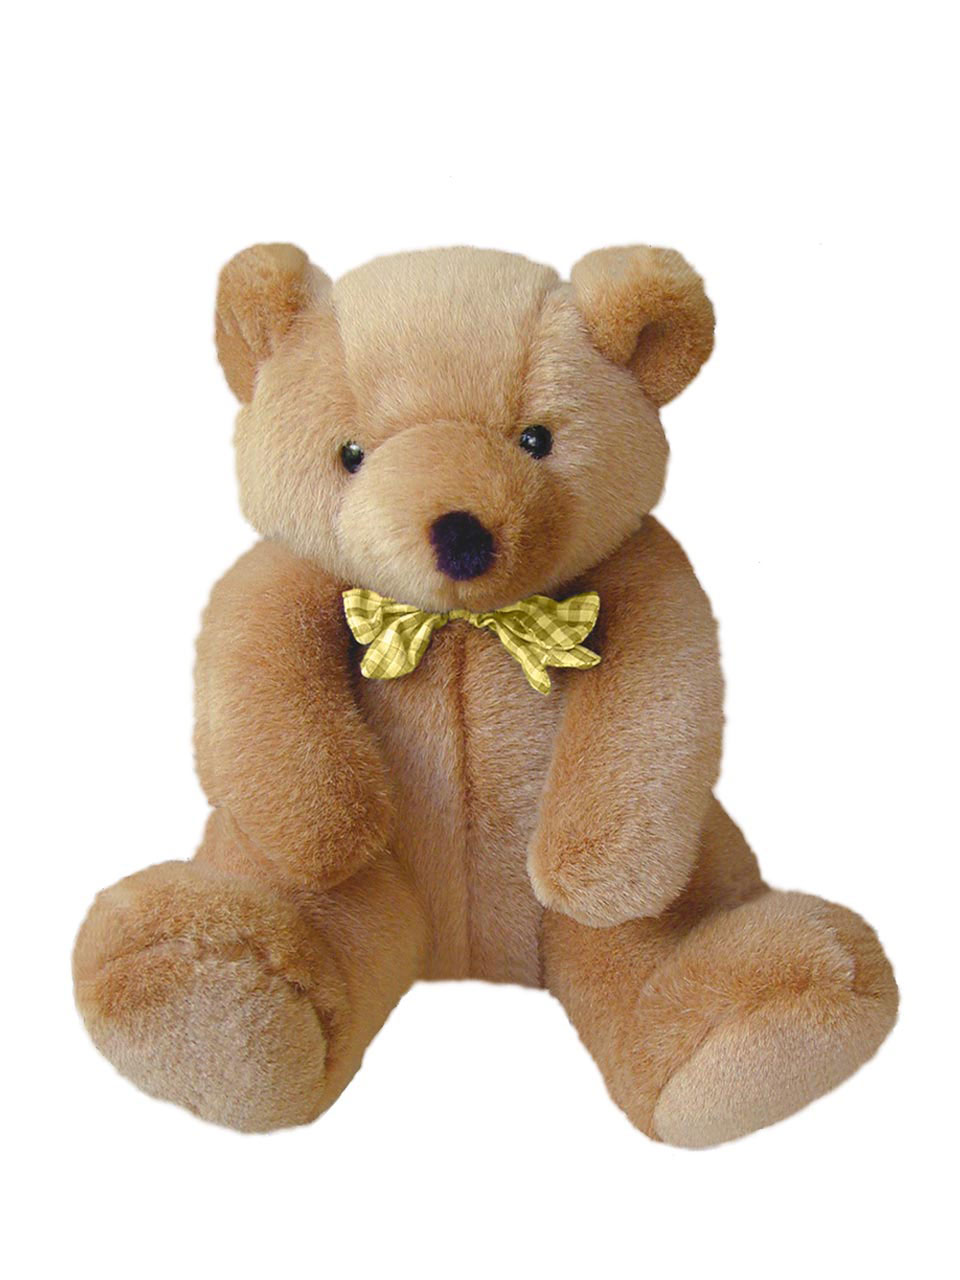 teddybear teddy bear toy free photo